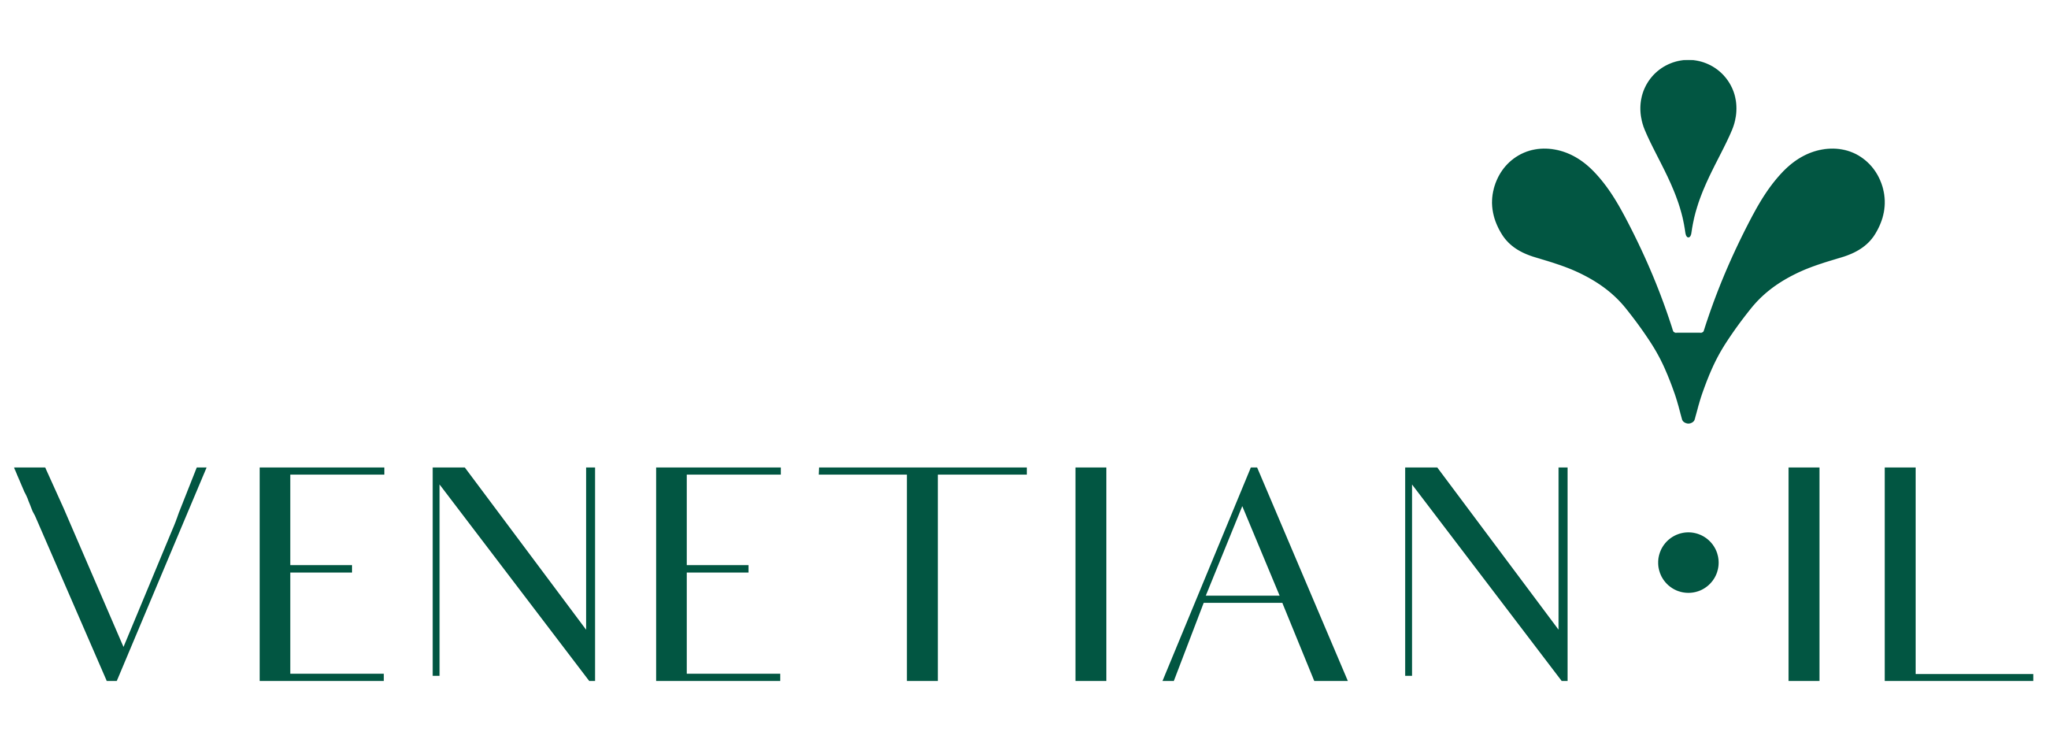 venetian logo green 01